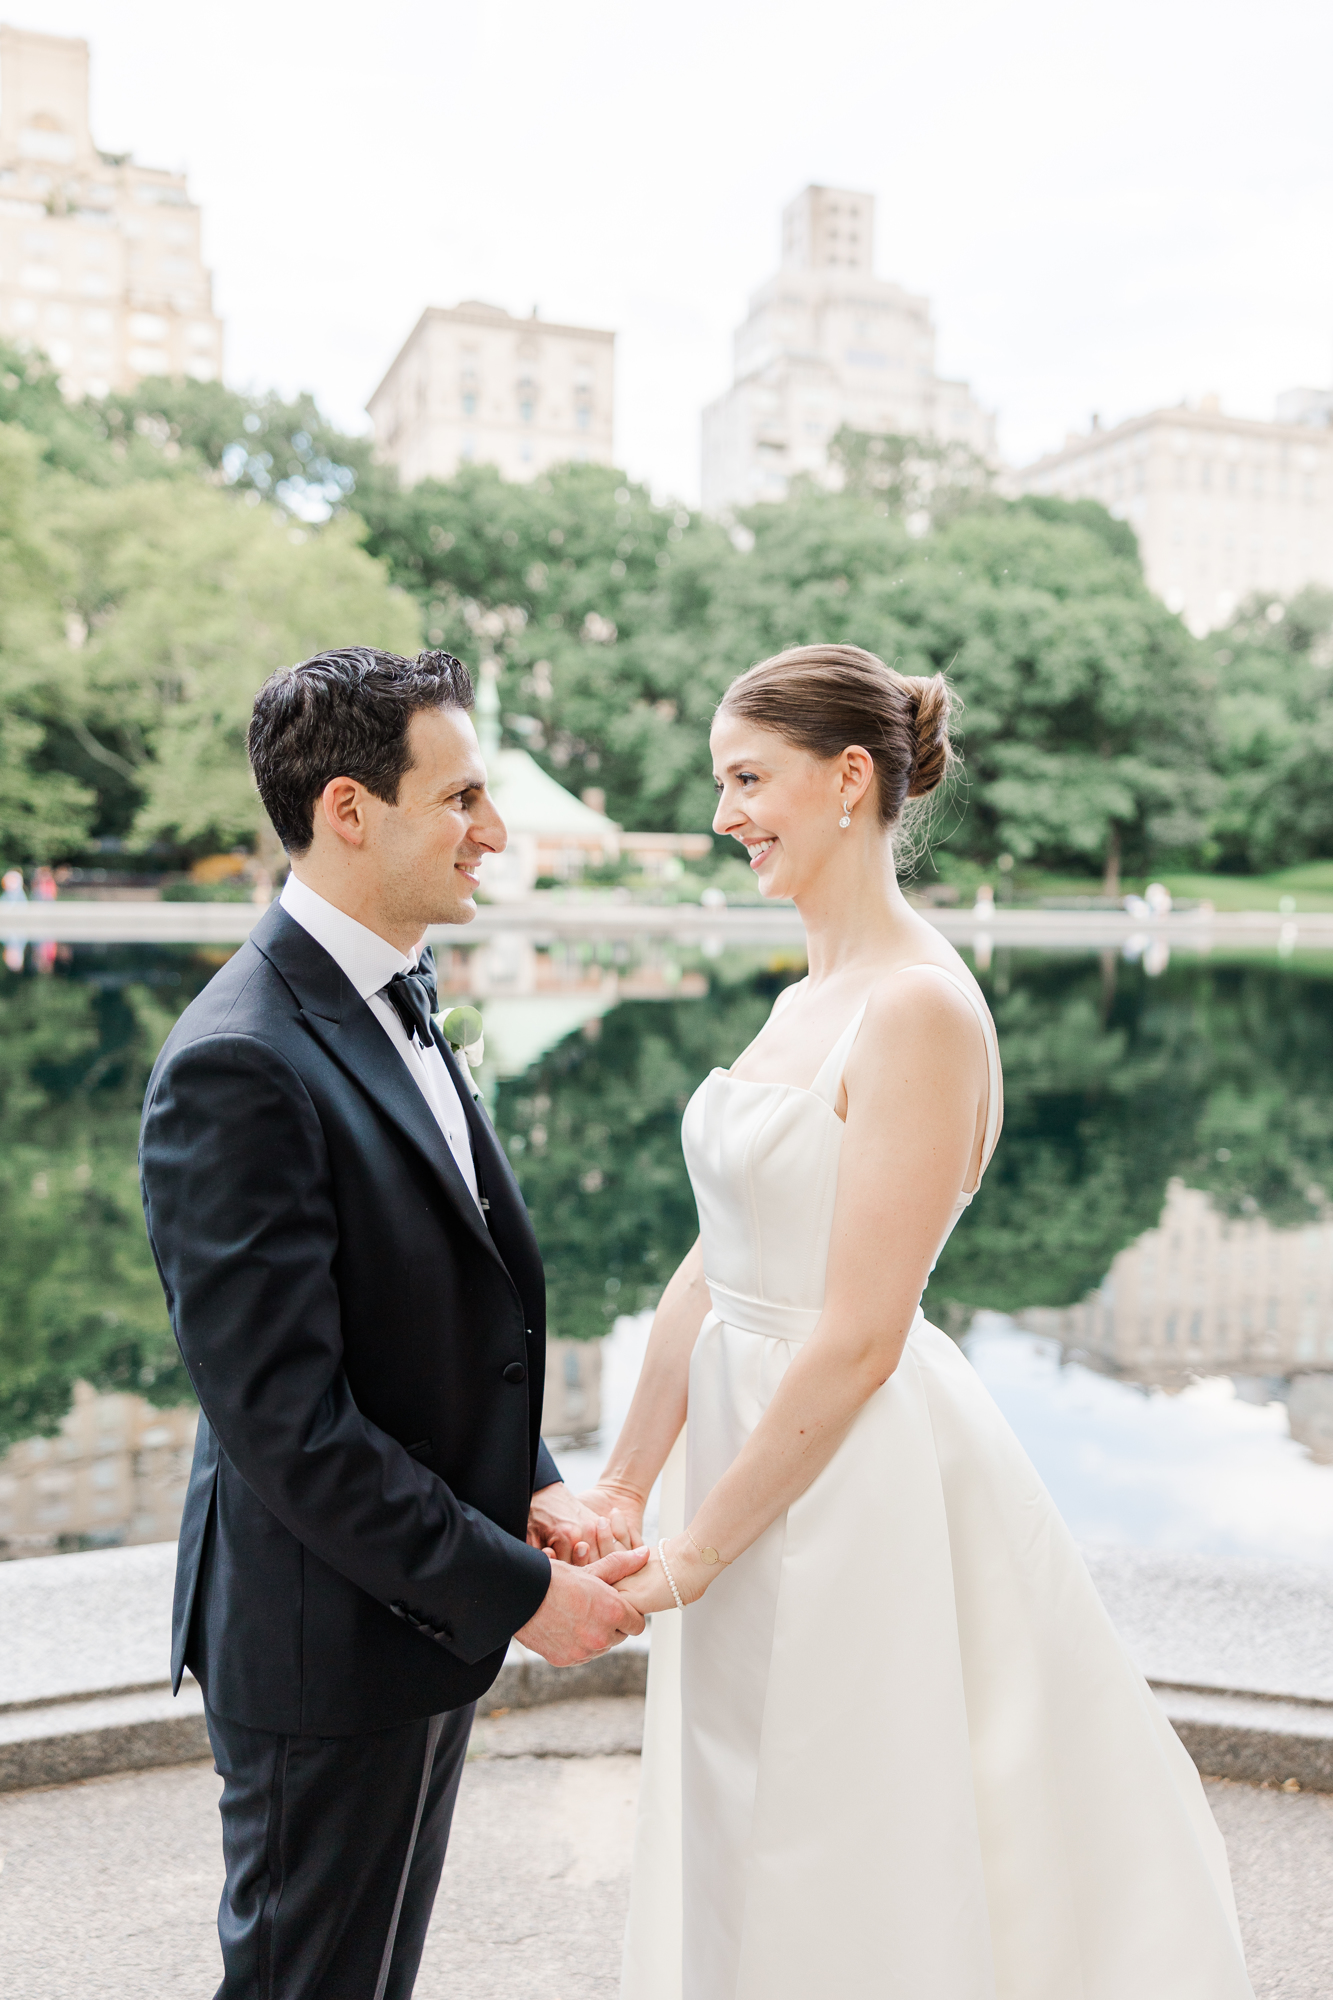 Joyful Central Park Boathouse Wedding in New York